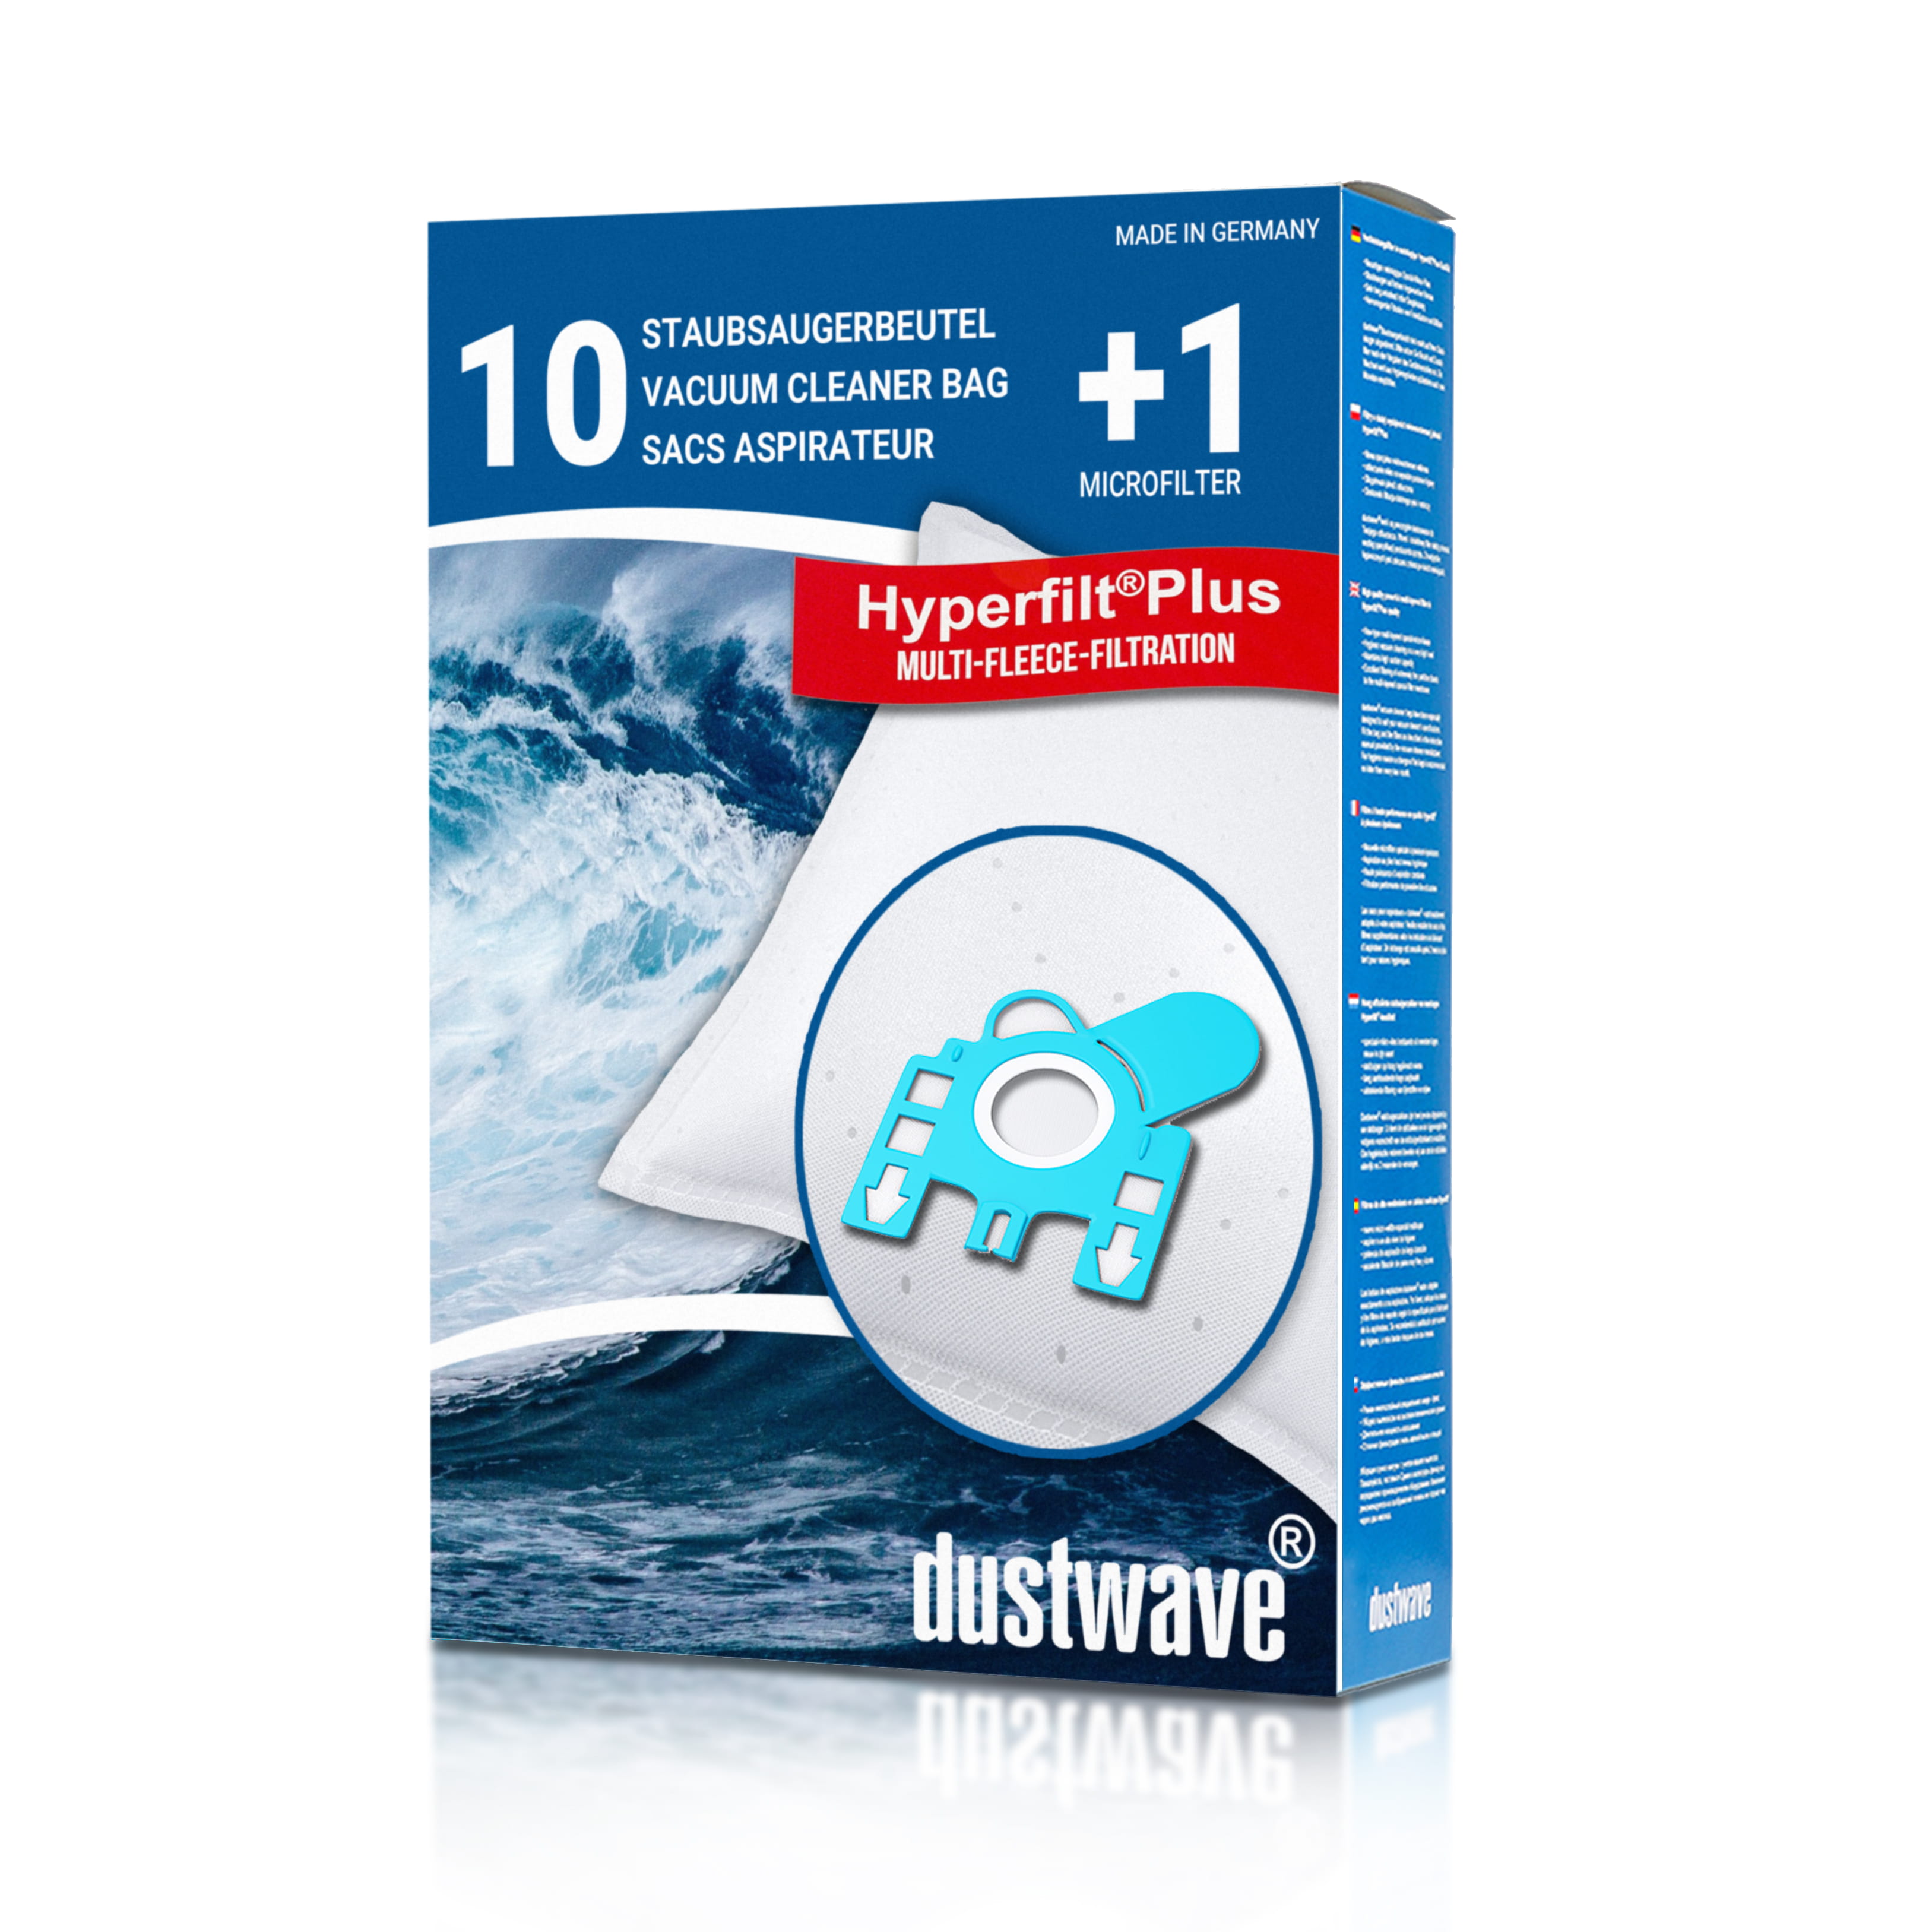 Dustwave® 10 Staubsaugerbeutel für Hoover PU2118 001 - hocheffizient, mehrlagiges Mikrovlies mit Hygieneverschluss - Made in Germany